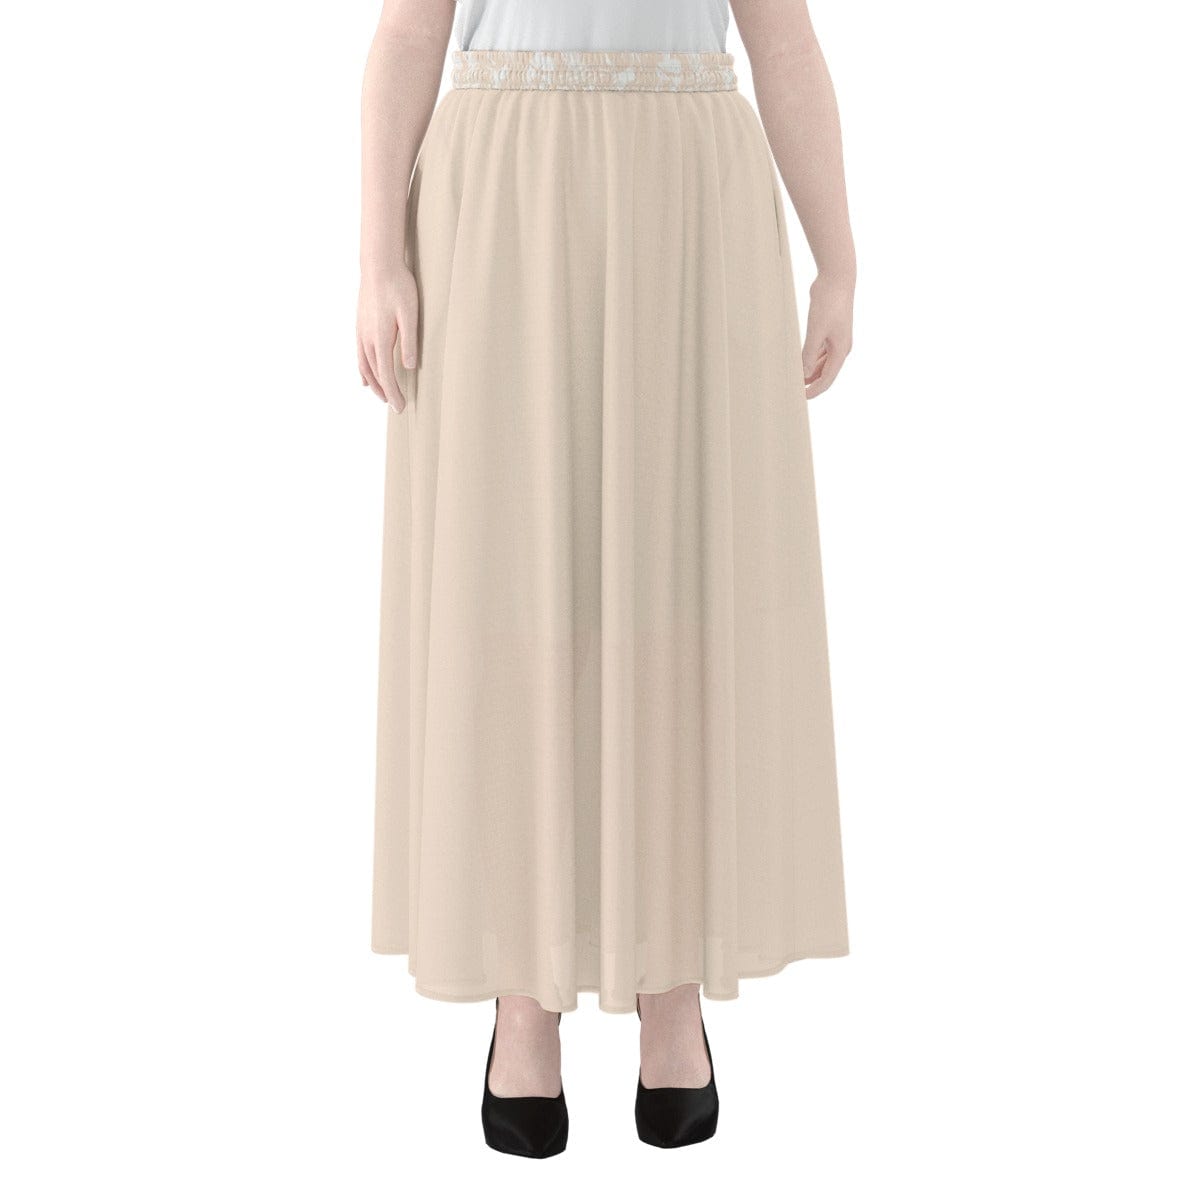 Yoycol 2XL / White Hawaii Blush - Women's Maxi Chiffon Skirts With Lining